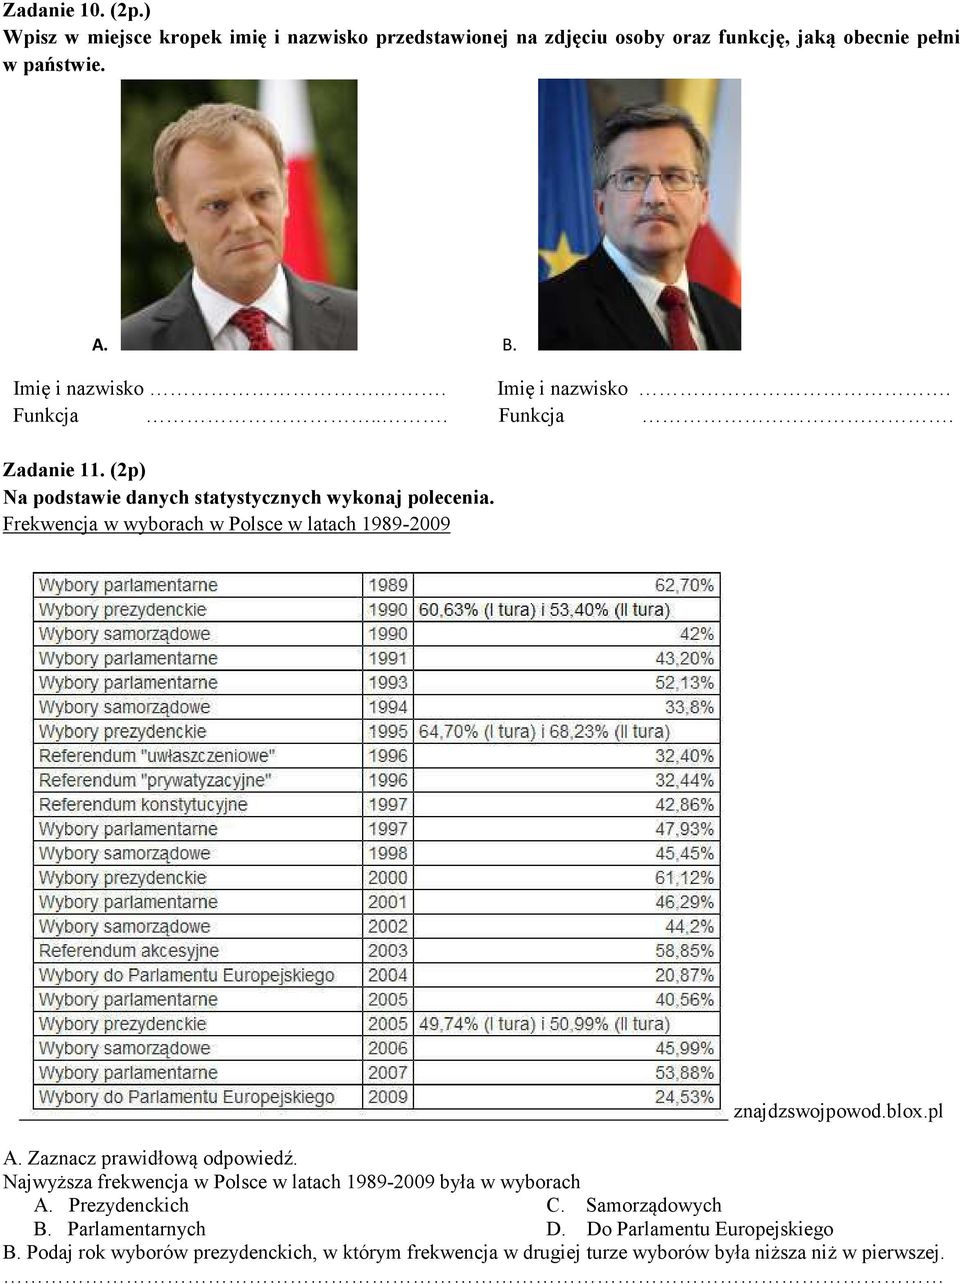 Frekwencja w wyborach w Polsce w latach 1989-2009 znajdzswojpowod.blox.pl A. Zaznacz prawidłową odpowiedź.